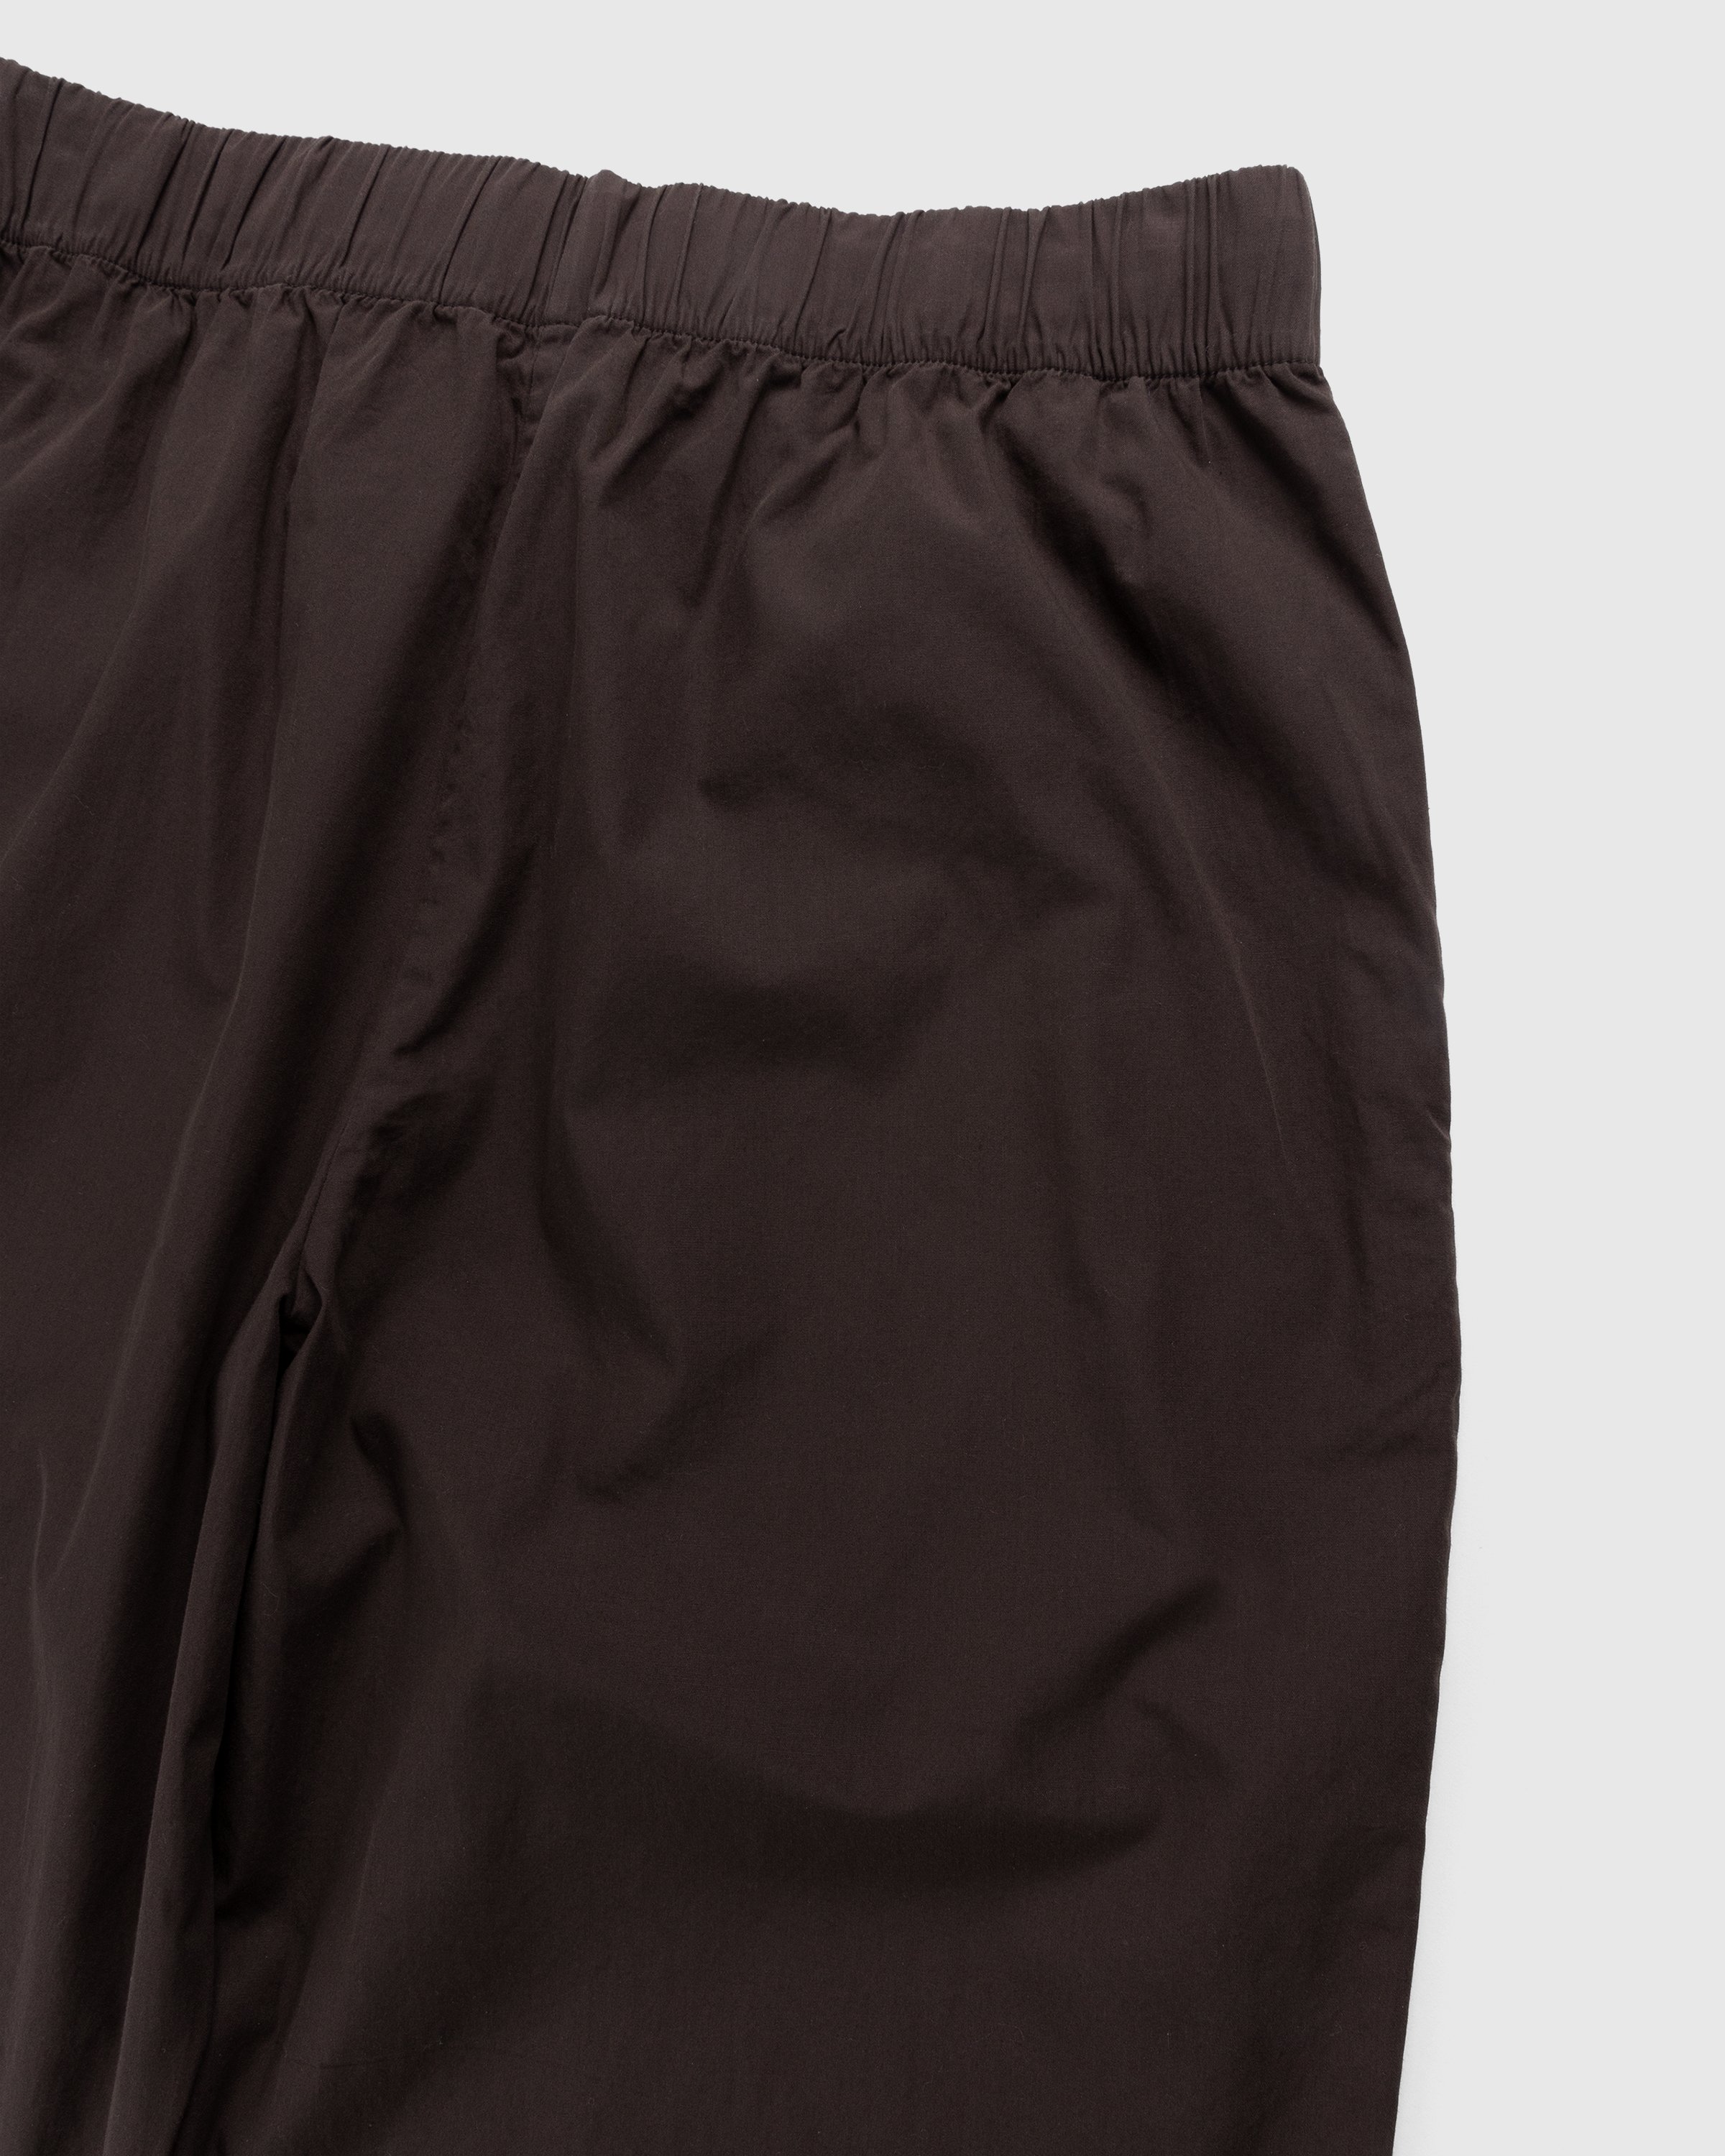 Tekla - Cotton Poplin Pyjamas Pants Coffee - Clothing - Brown - Image 4